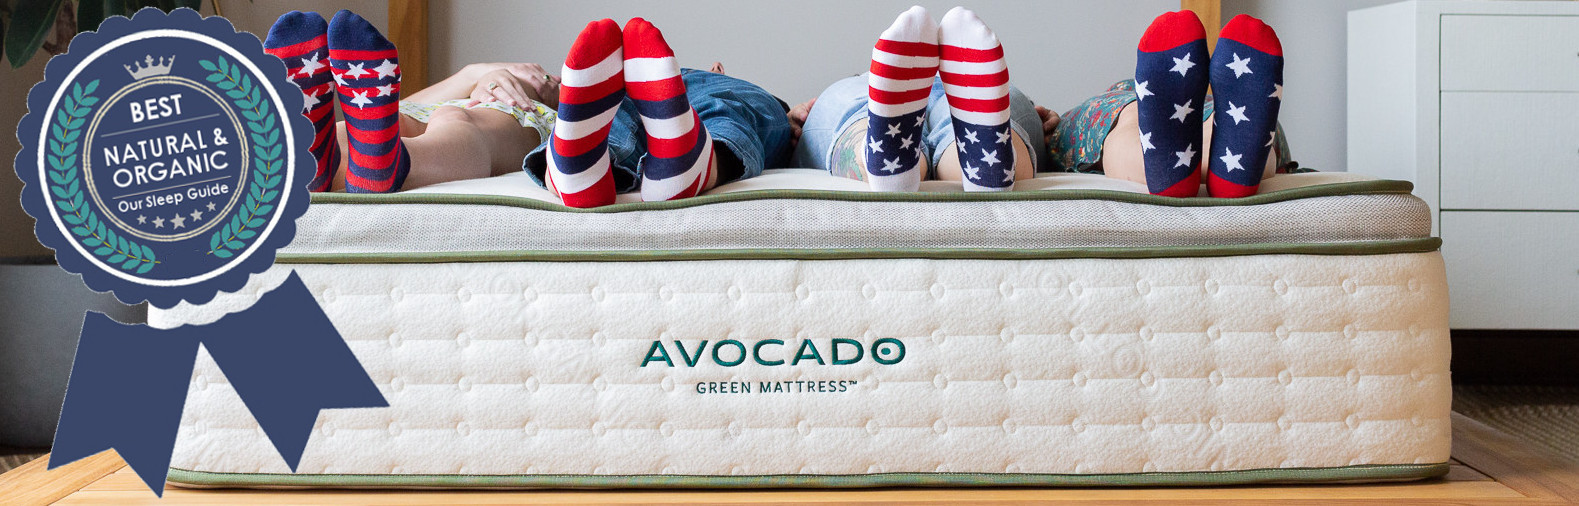 best natural mattress avocado